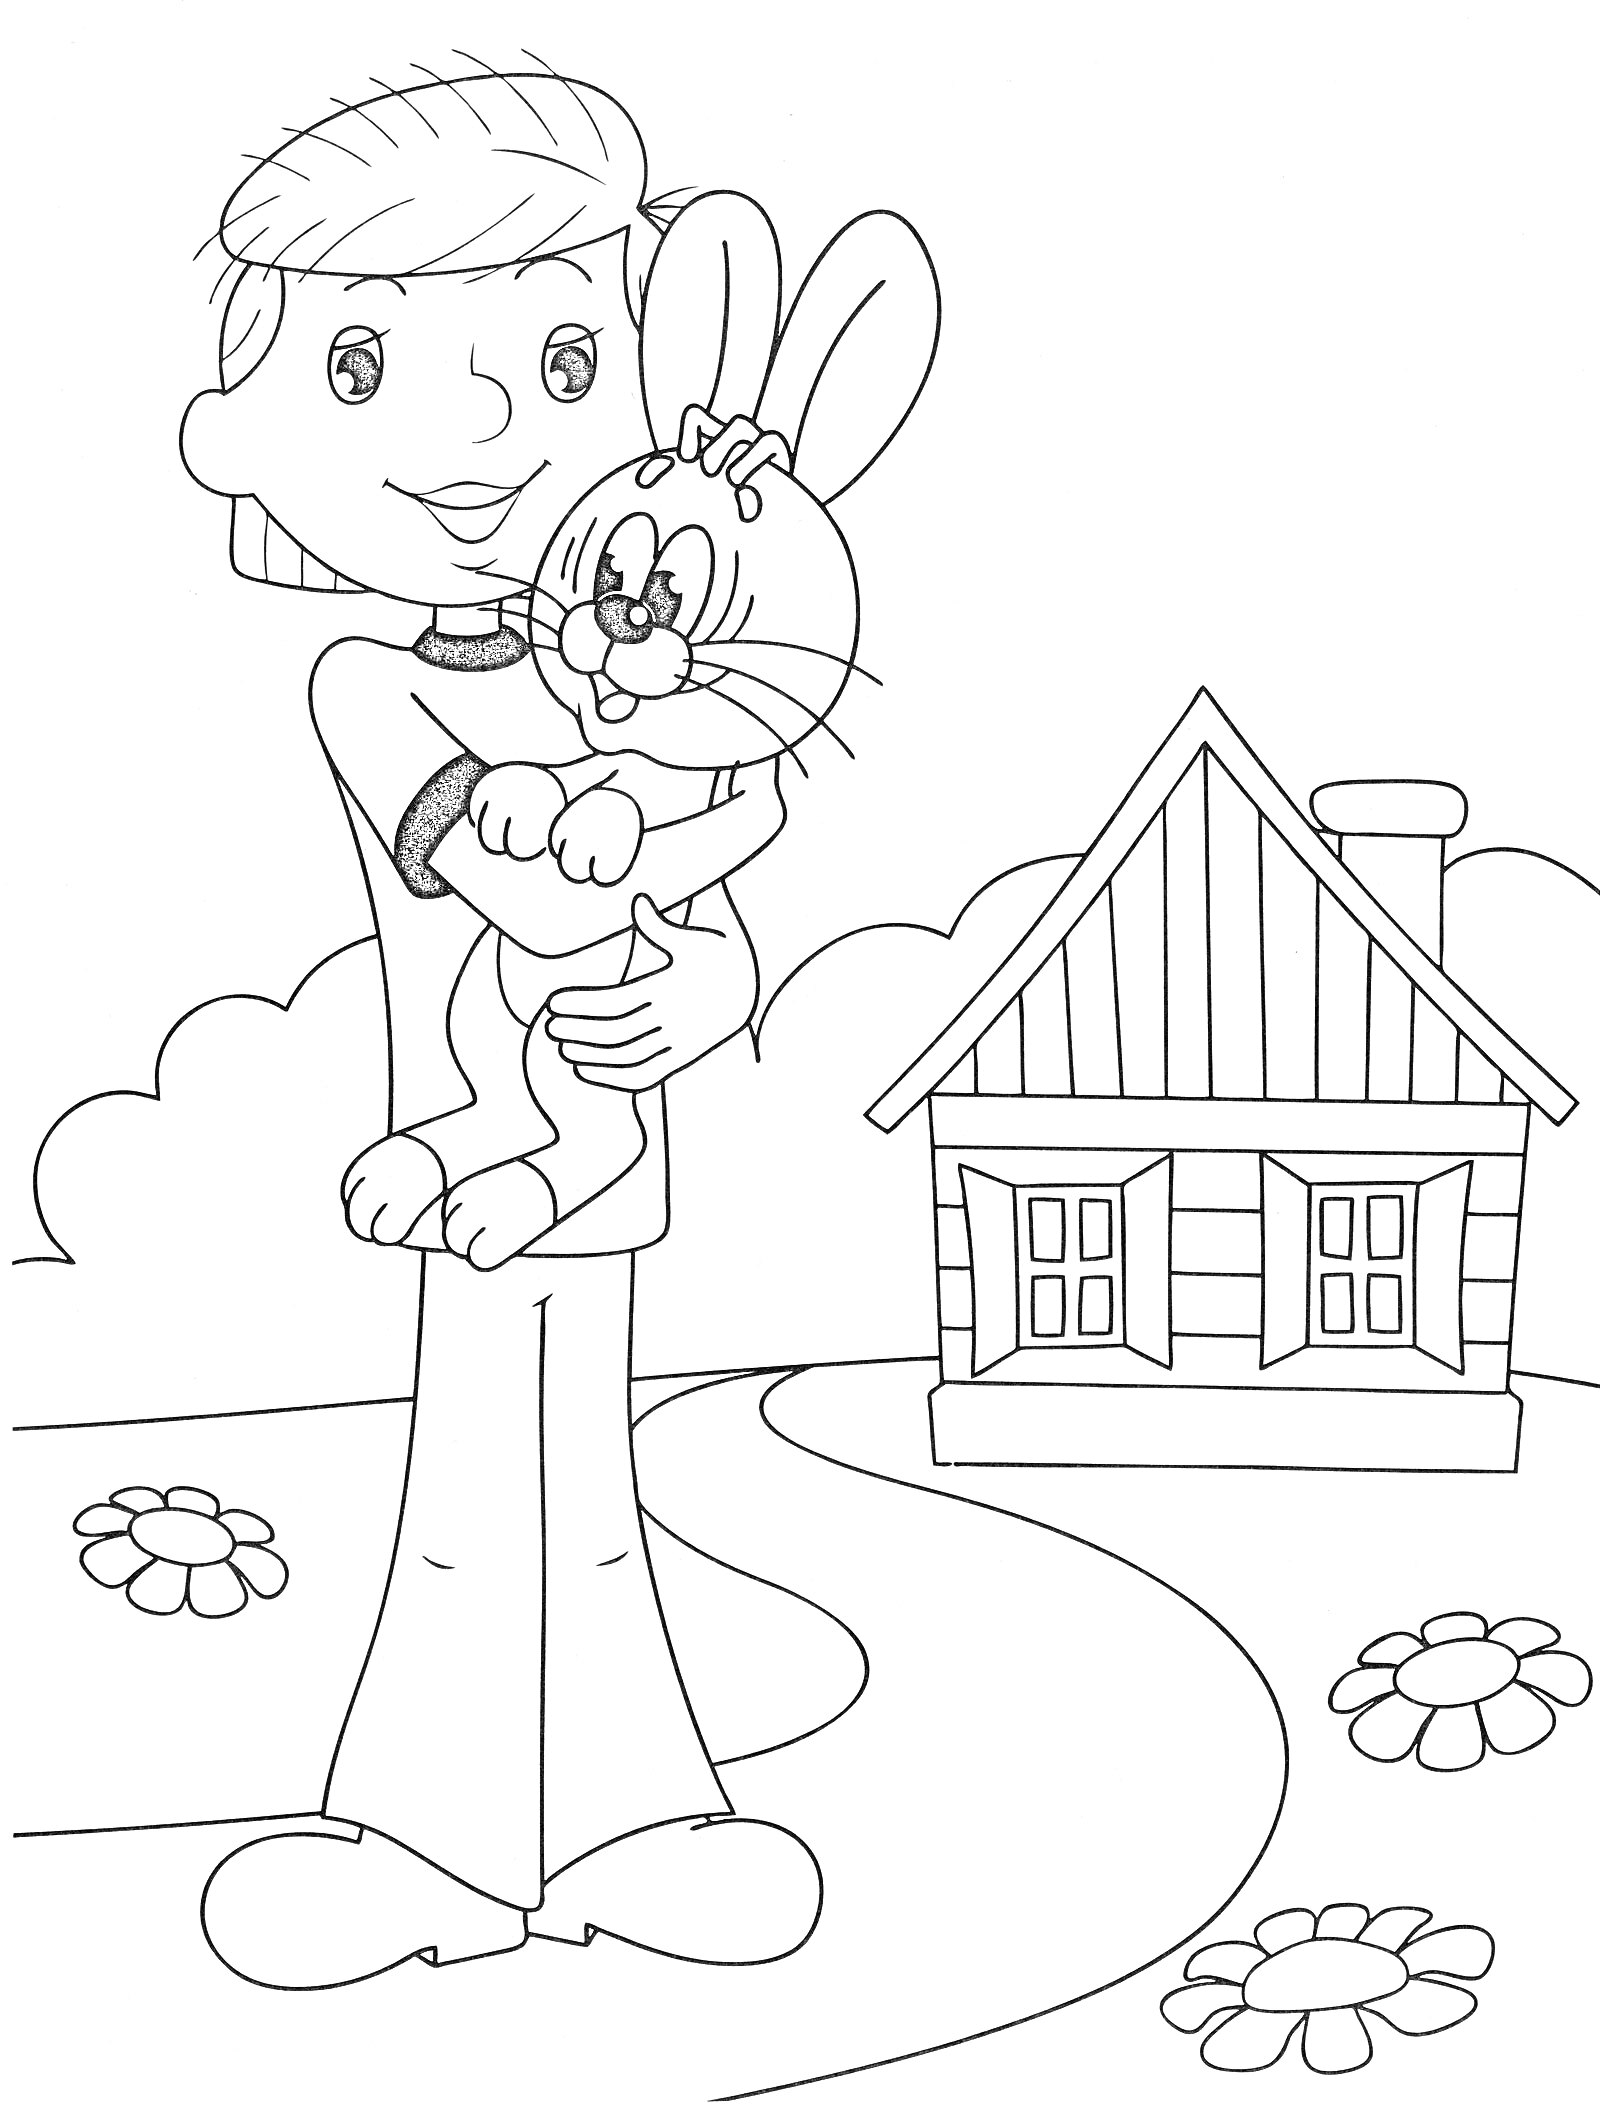 Раскраска Мальчик с кроликом на руках перед деревянным домом